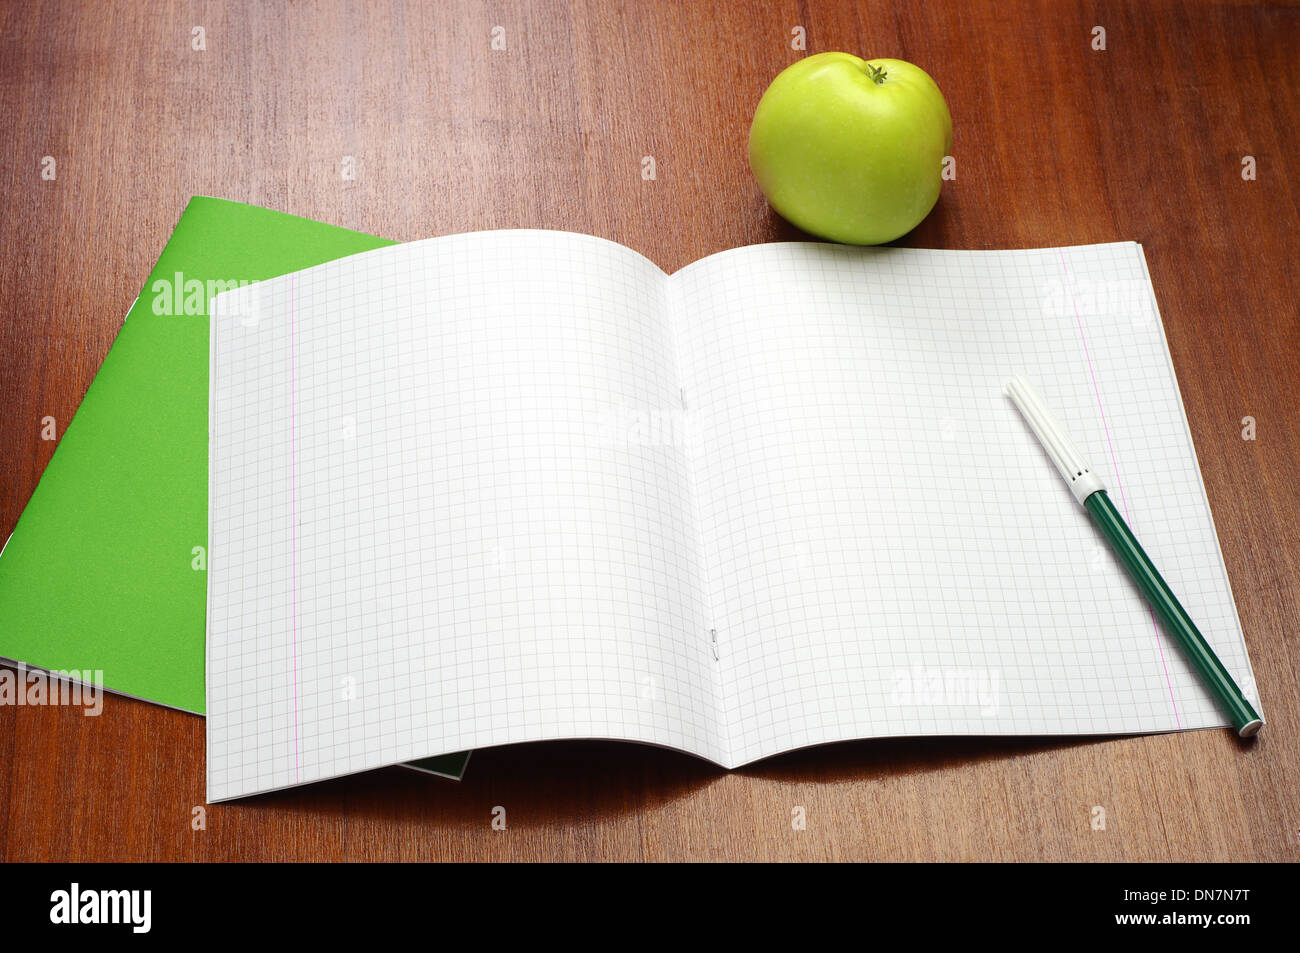 Schulheft, Filzstifte und grüner Apfel auf Tisch eröffnet Stockfoto